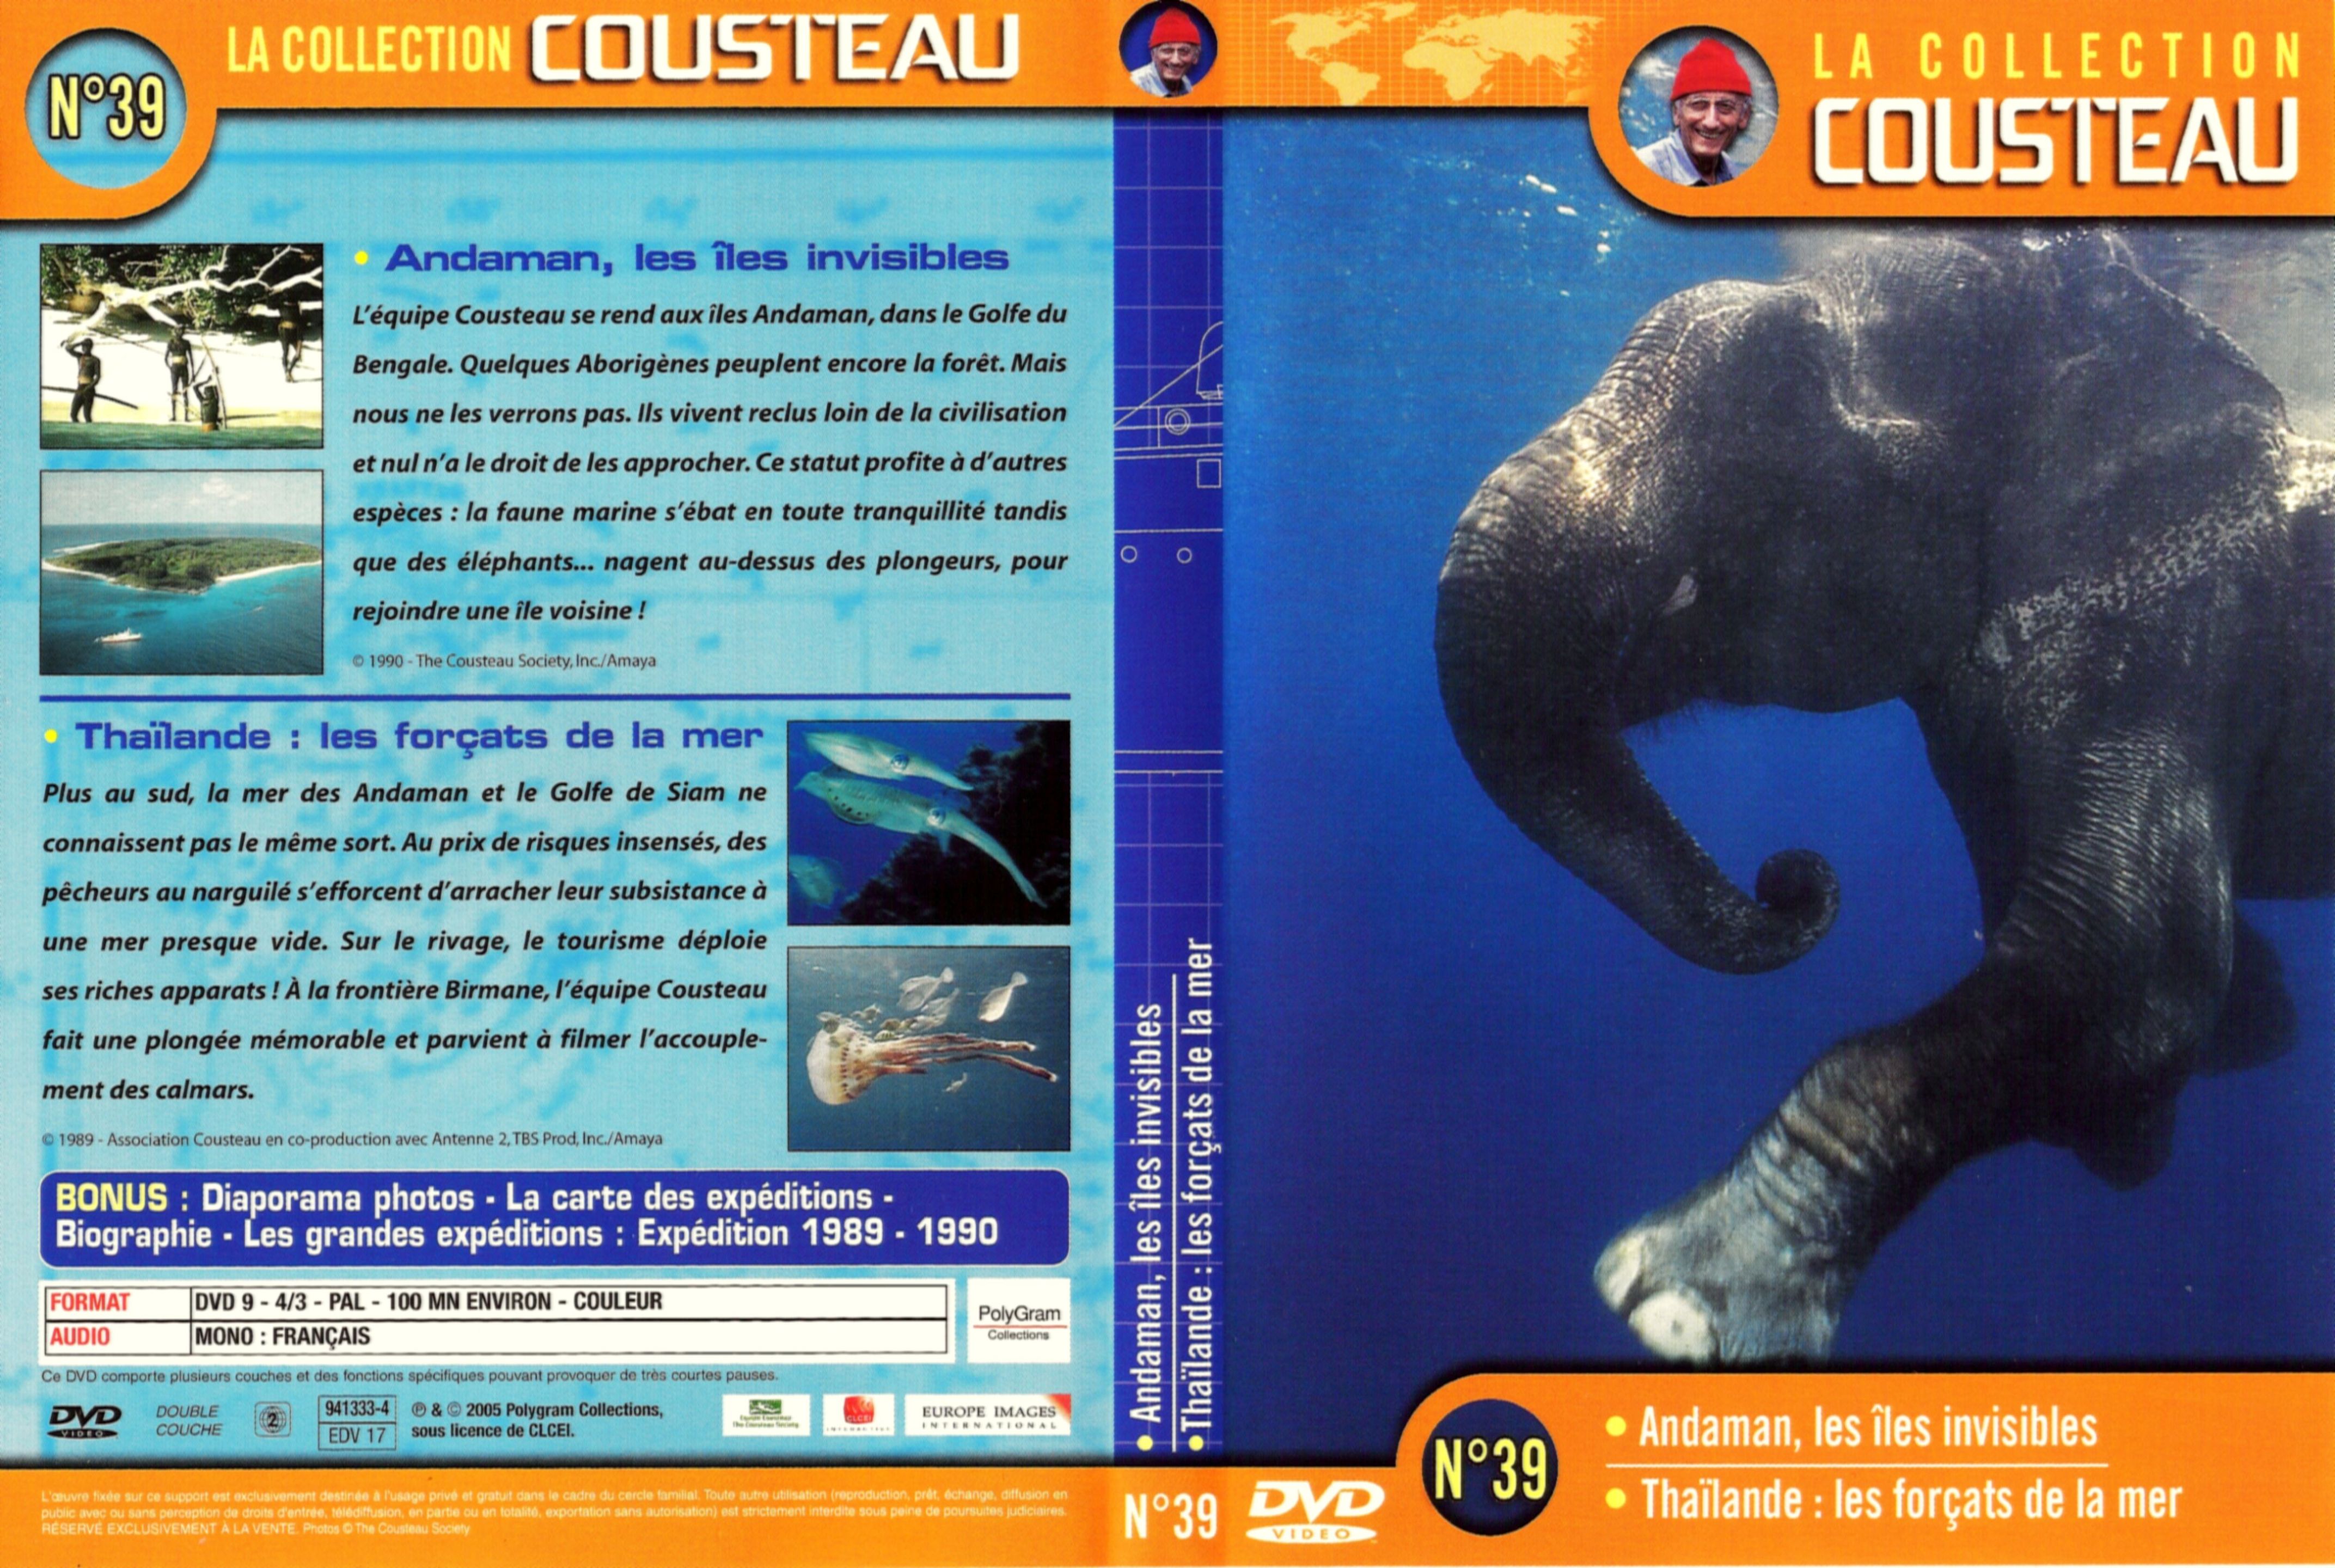 Jaquette DVD Cousteau Collection vol 39